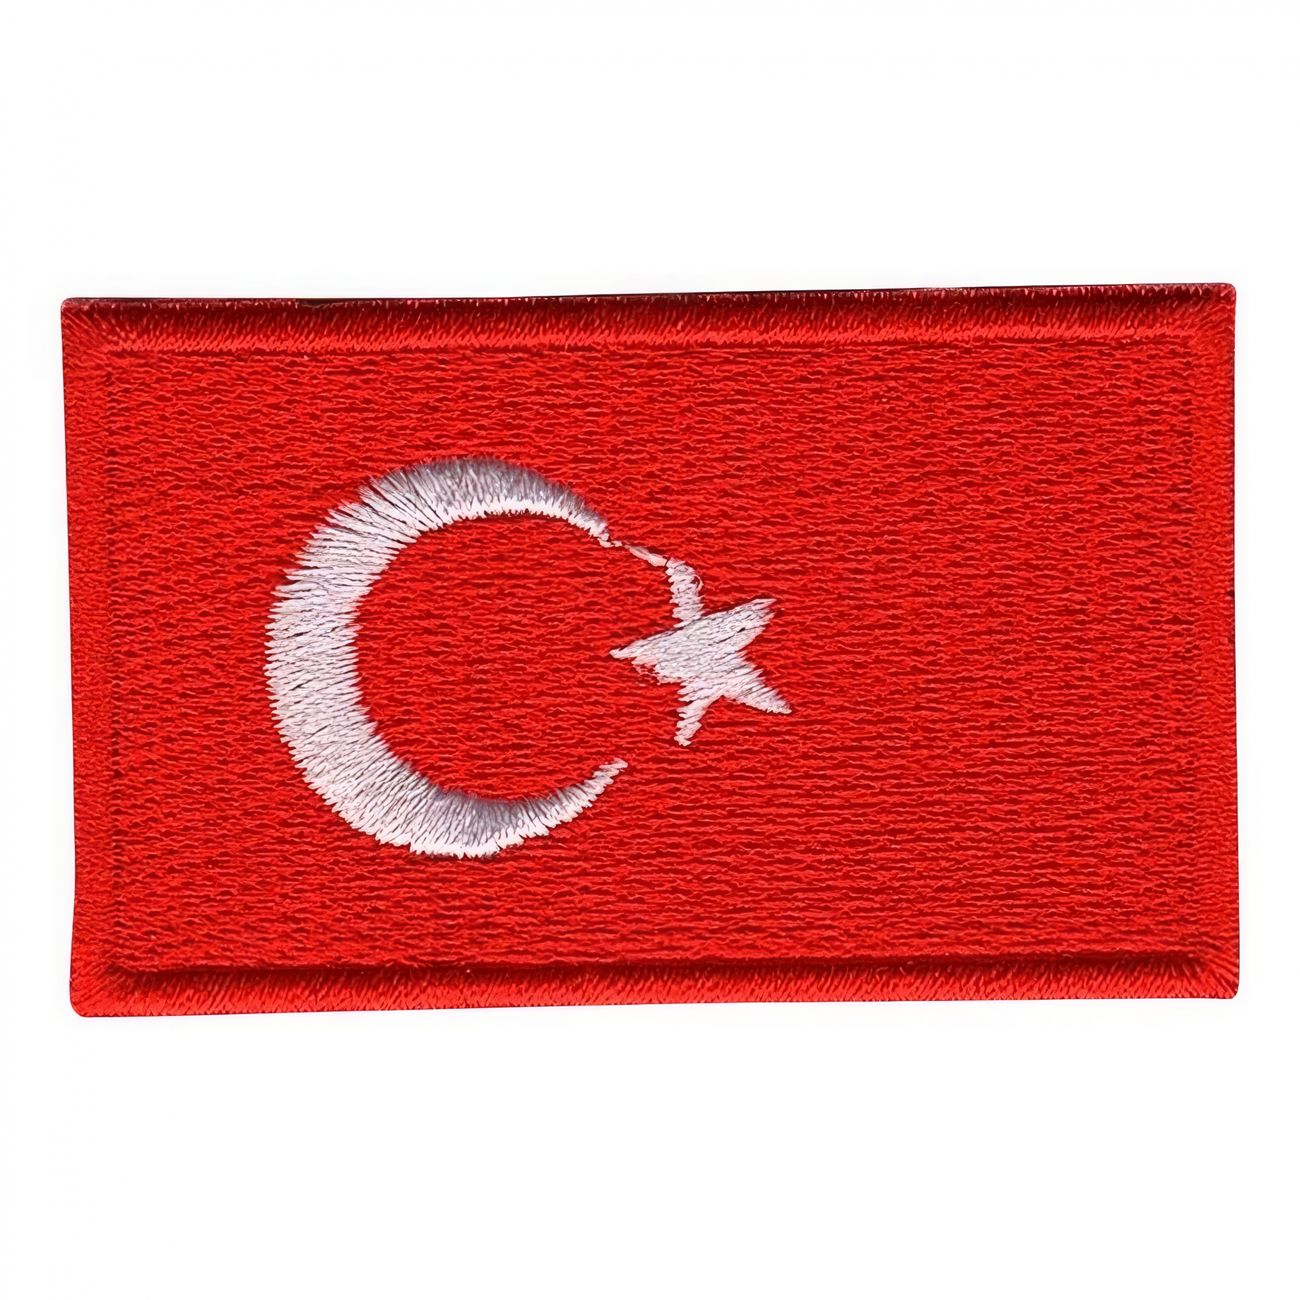 tygmarke-flagga-turkiet-94181-1